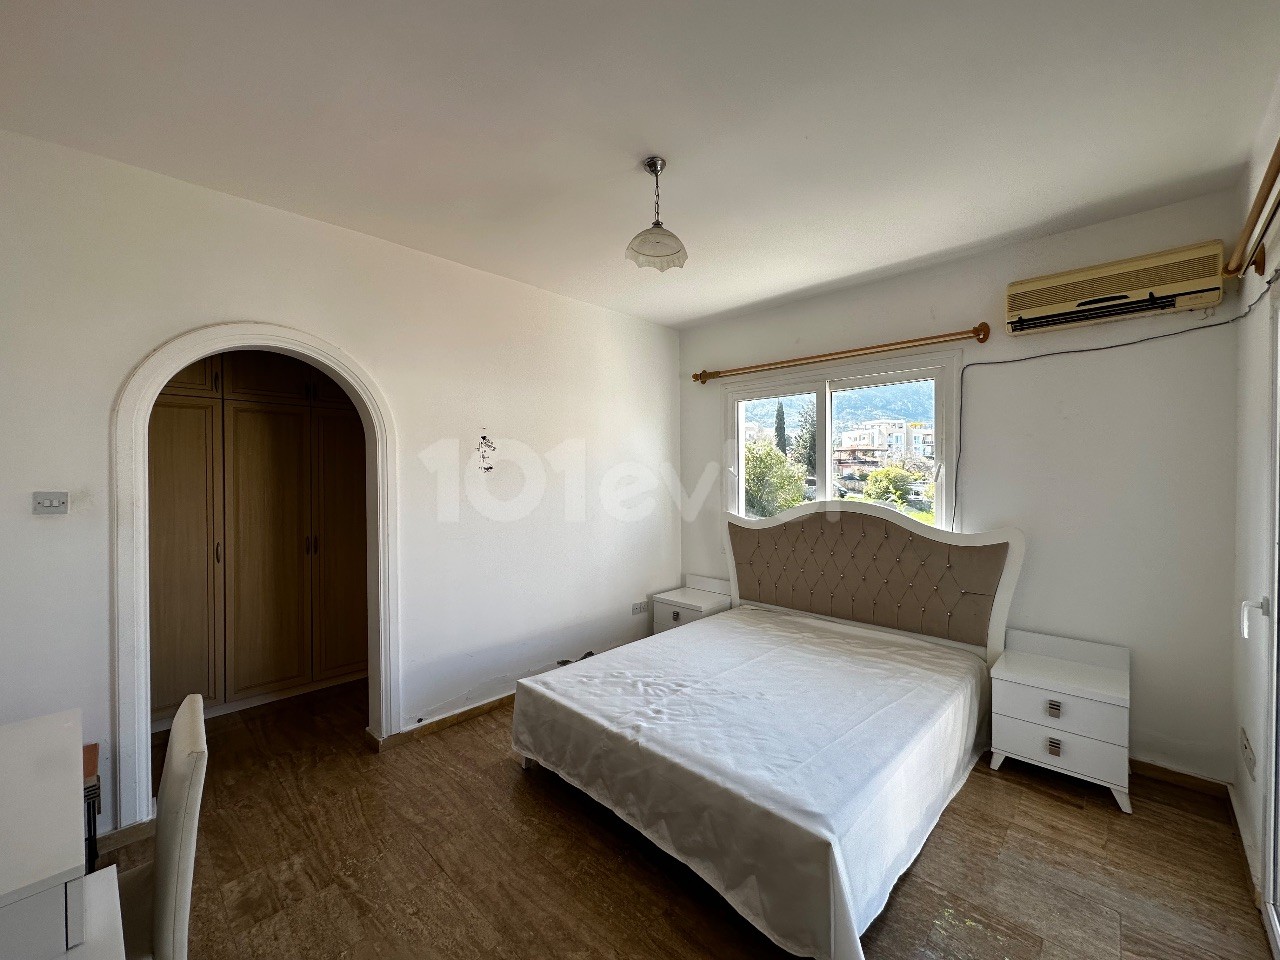 Kyrenia Alsancak; Monatliche Zahlung Villa